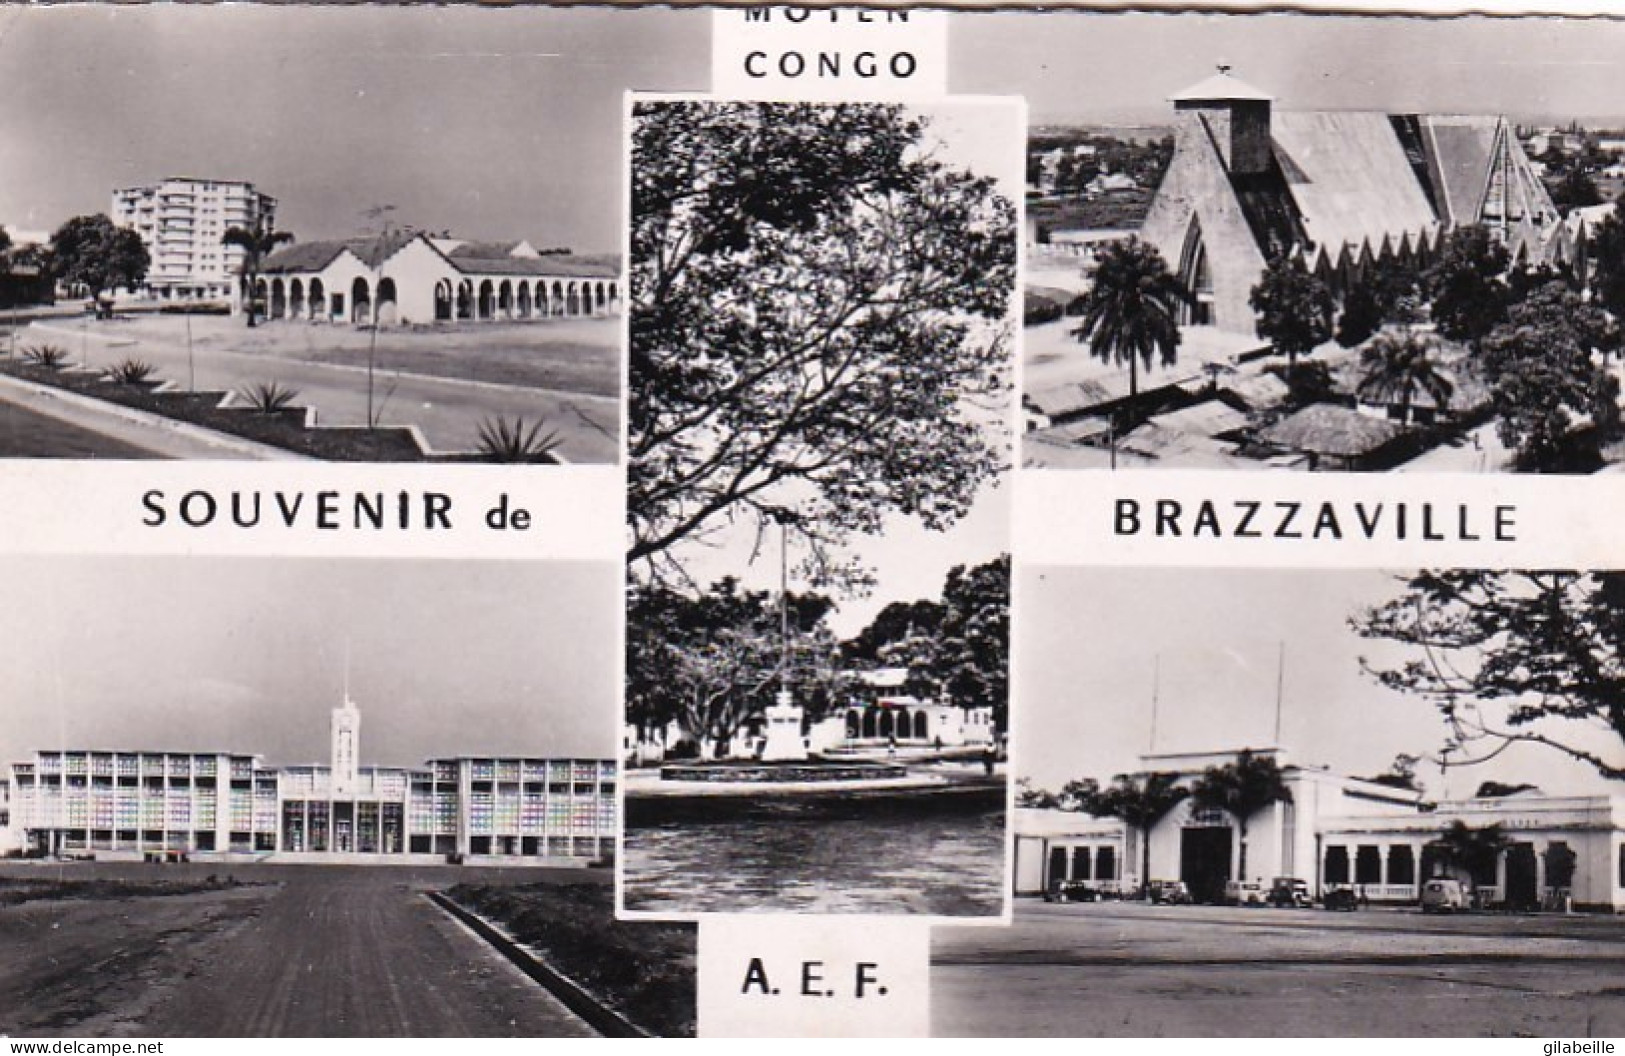 Congo - Souvenir De Brazzaville - A.E.F - 1958 - Le Lycée - Place De La Mairie - Les PTT - French Congo